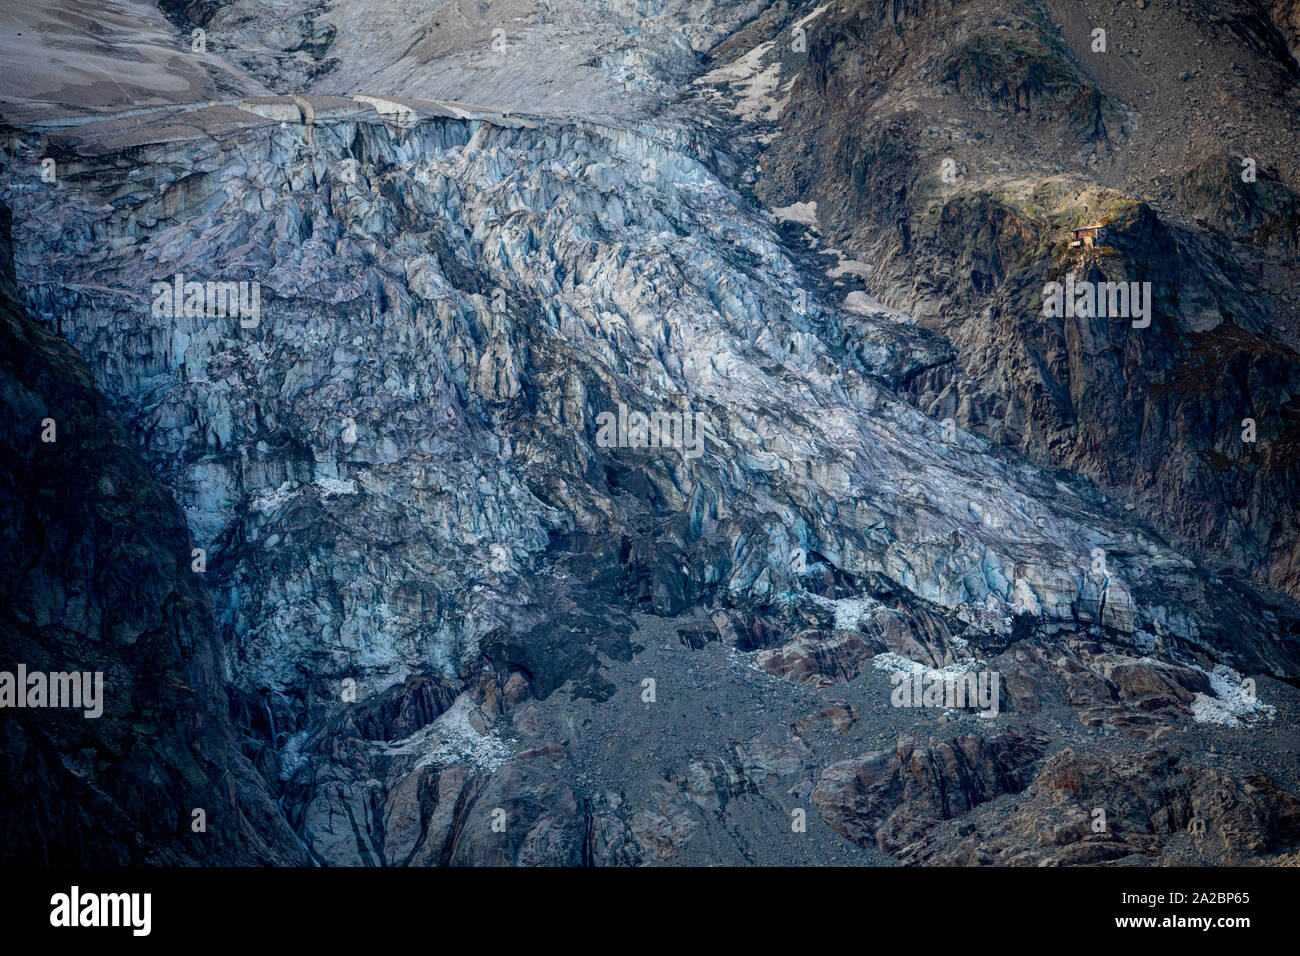 Die Berghütte Rifugo Bocalatte gesehen werden kann durch die Planpinxieu Gletscher umgeben. Experten warnen davor, dass ein Teil der Planpincieux Gletscher an der berühmten Mont Blanc ist auf die Gefahr zu kollabieren Stockfoto